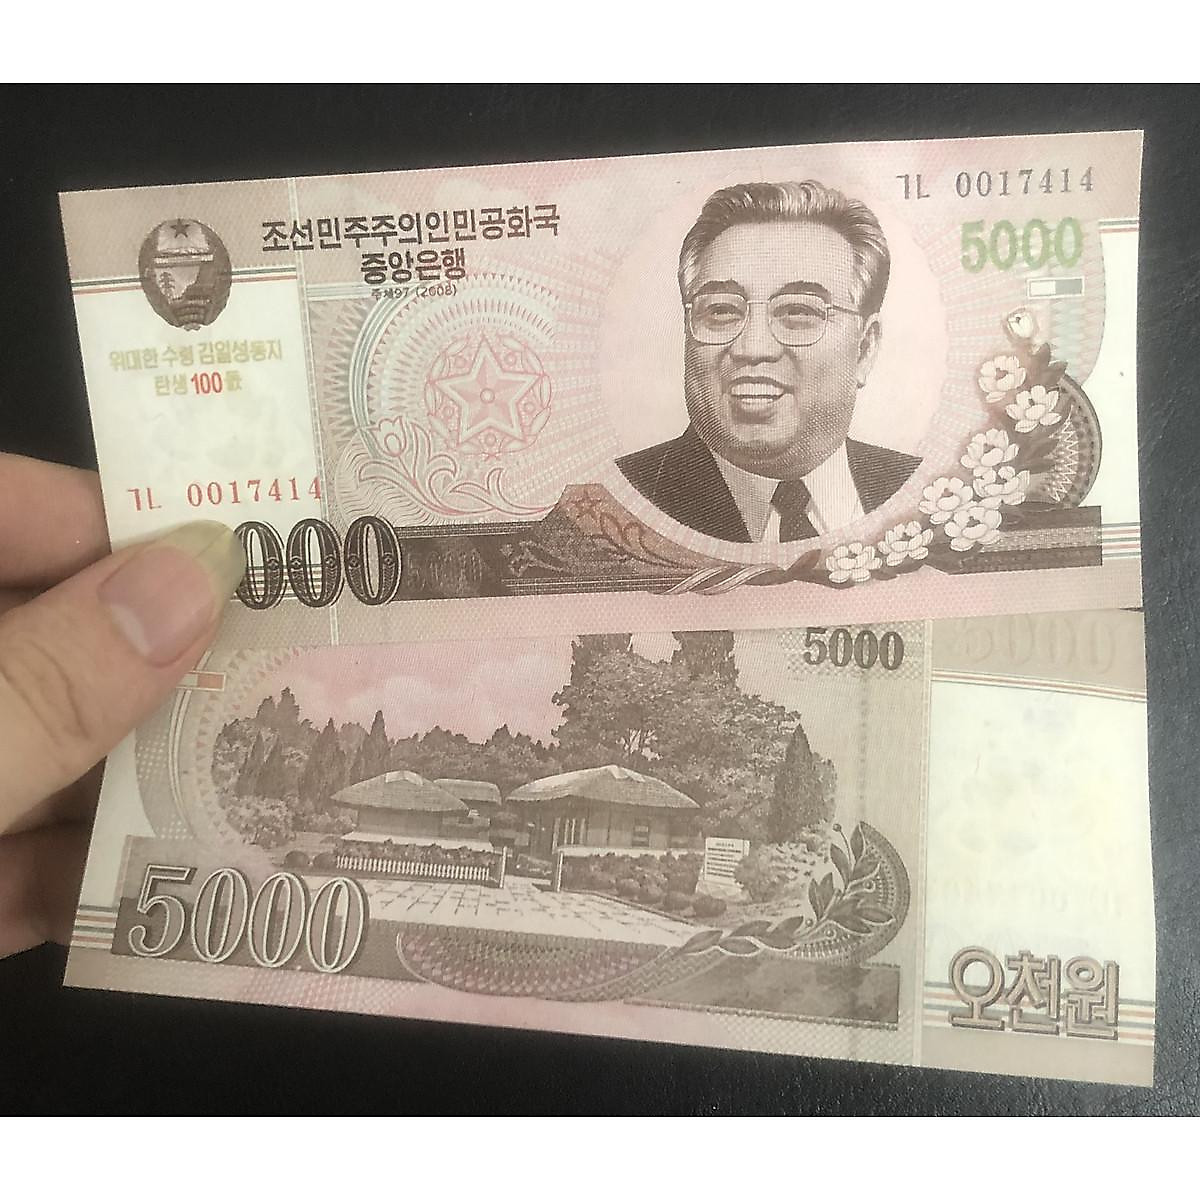 Tờ tiền Triều Tiên 5000 won hình ảnh ông Kim Nhật Thành, mới cứng ...